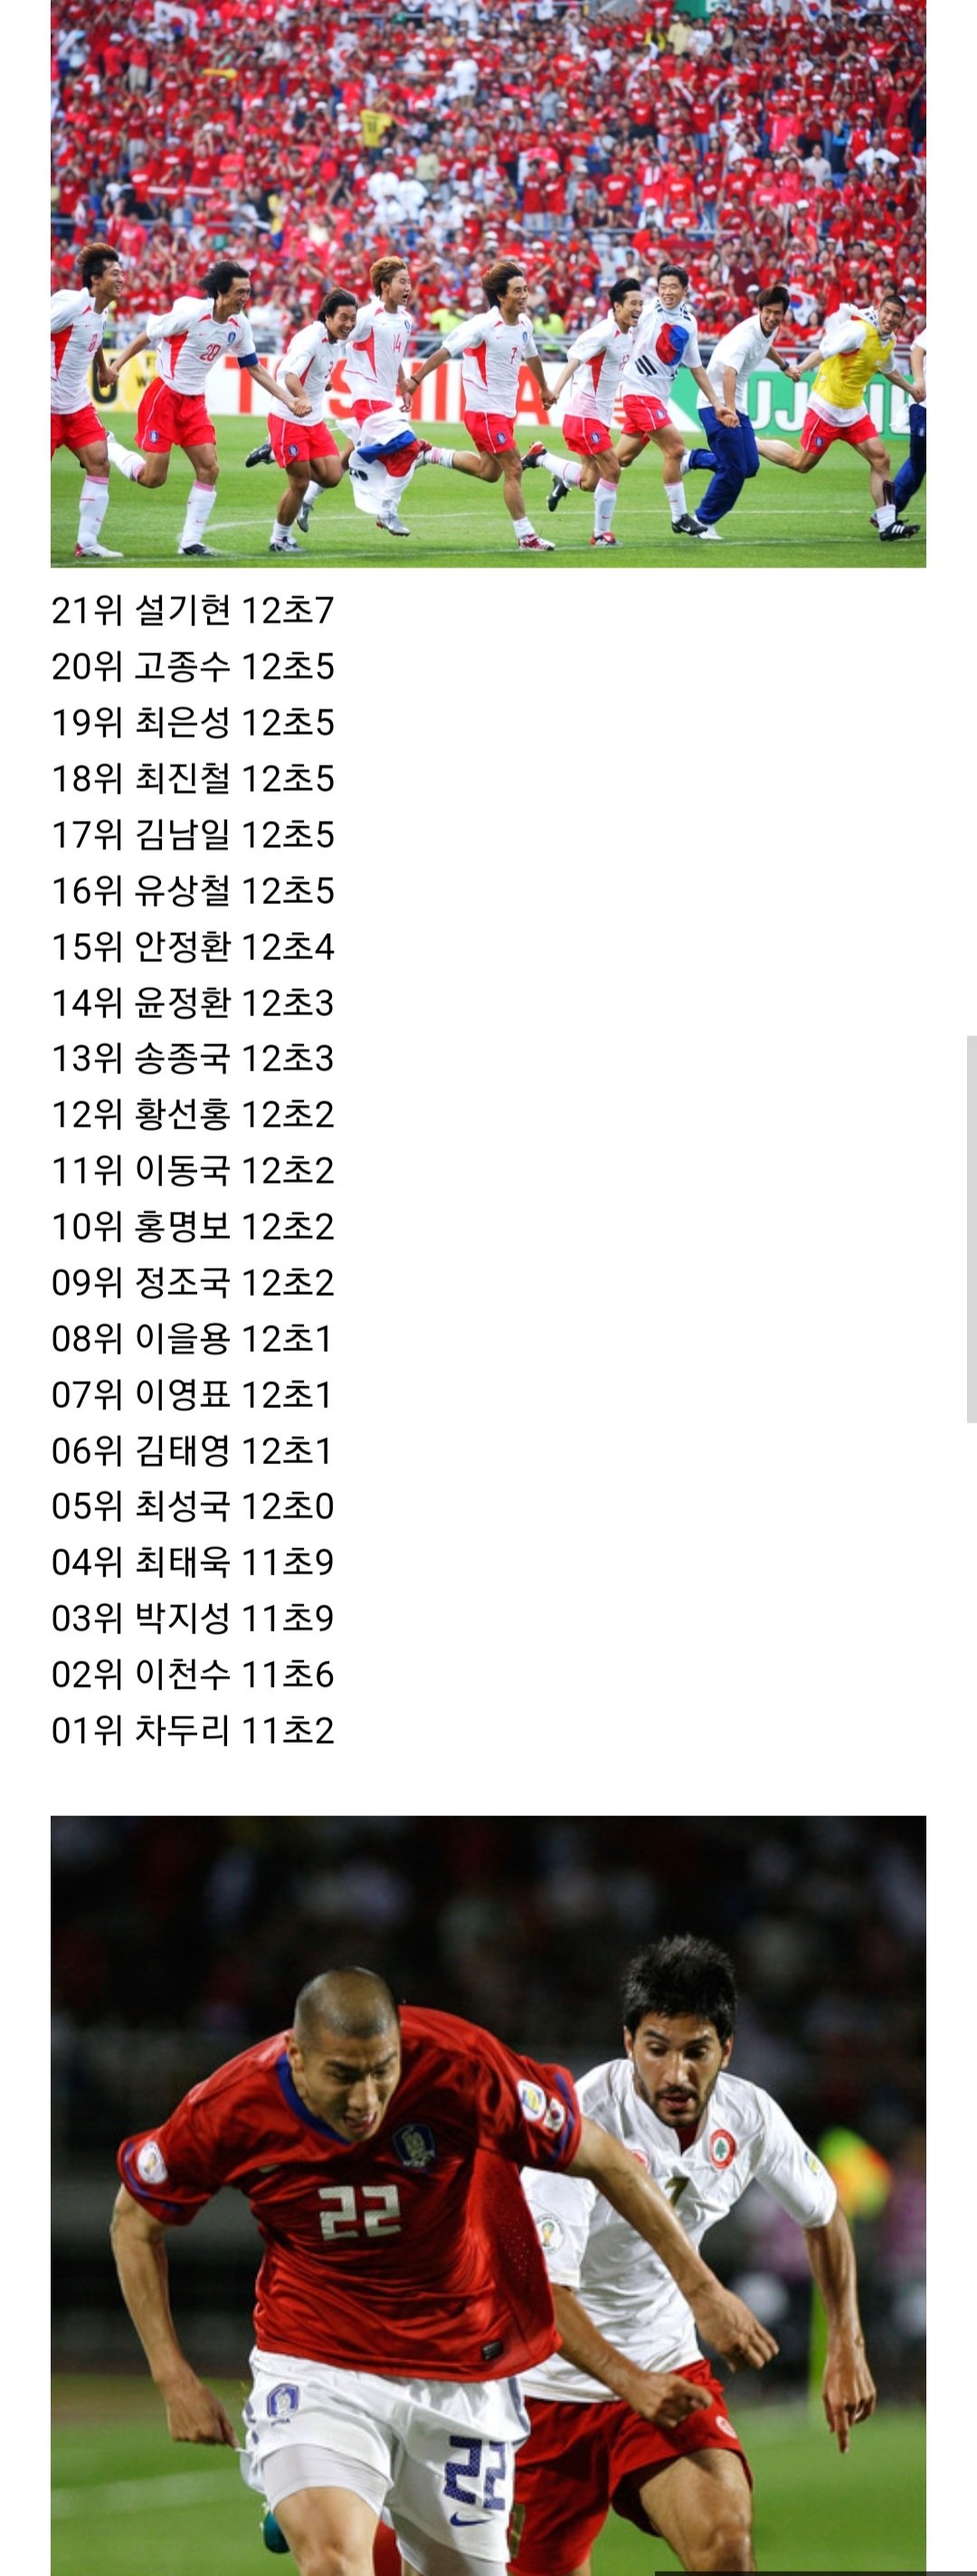 2002월드컵 멤버 공식 100M 달리기 기록.jpg